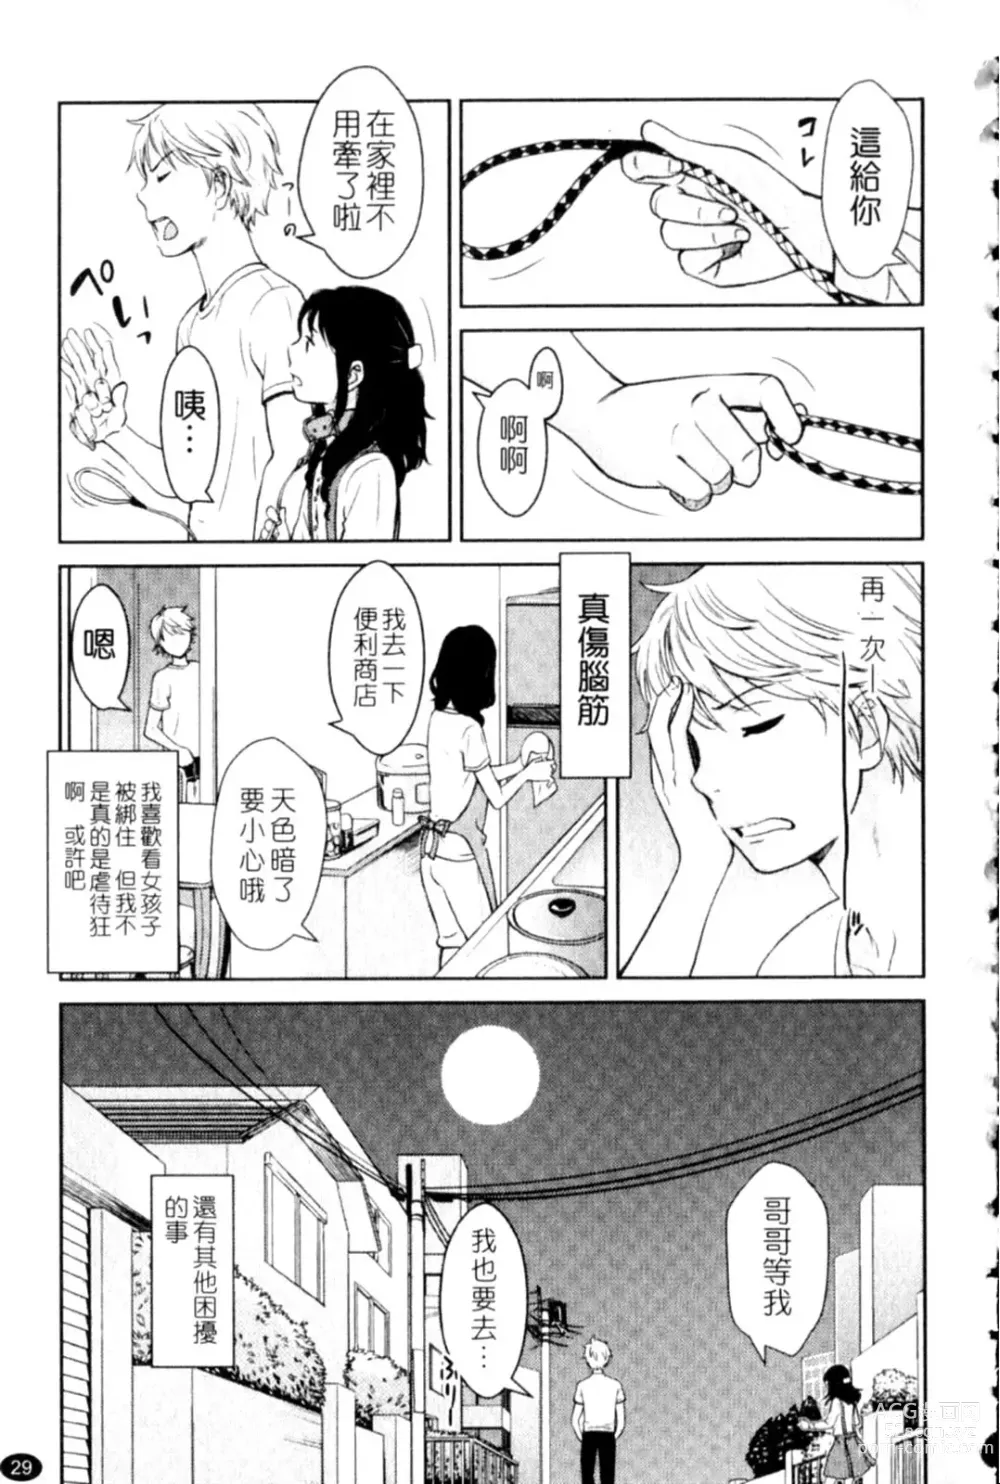 Page 29 of manga Porno Graffitti